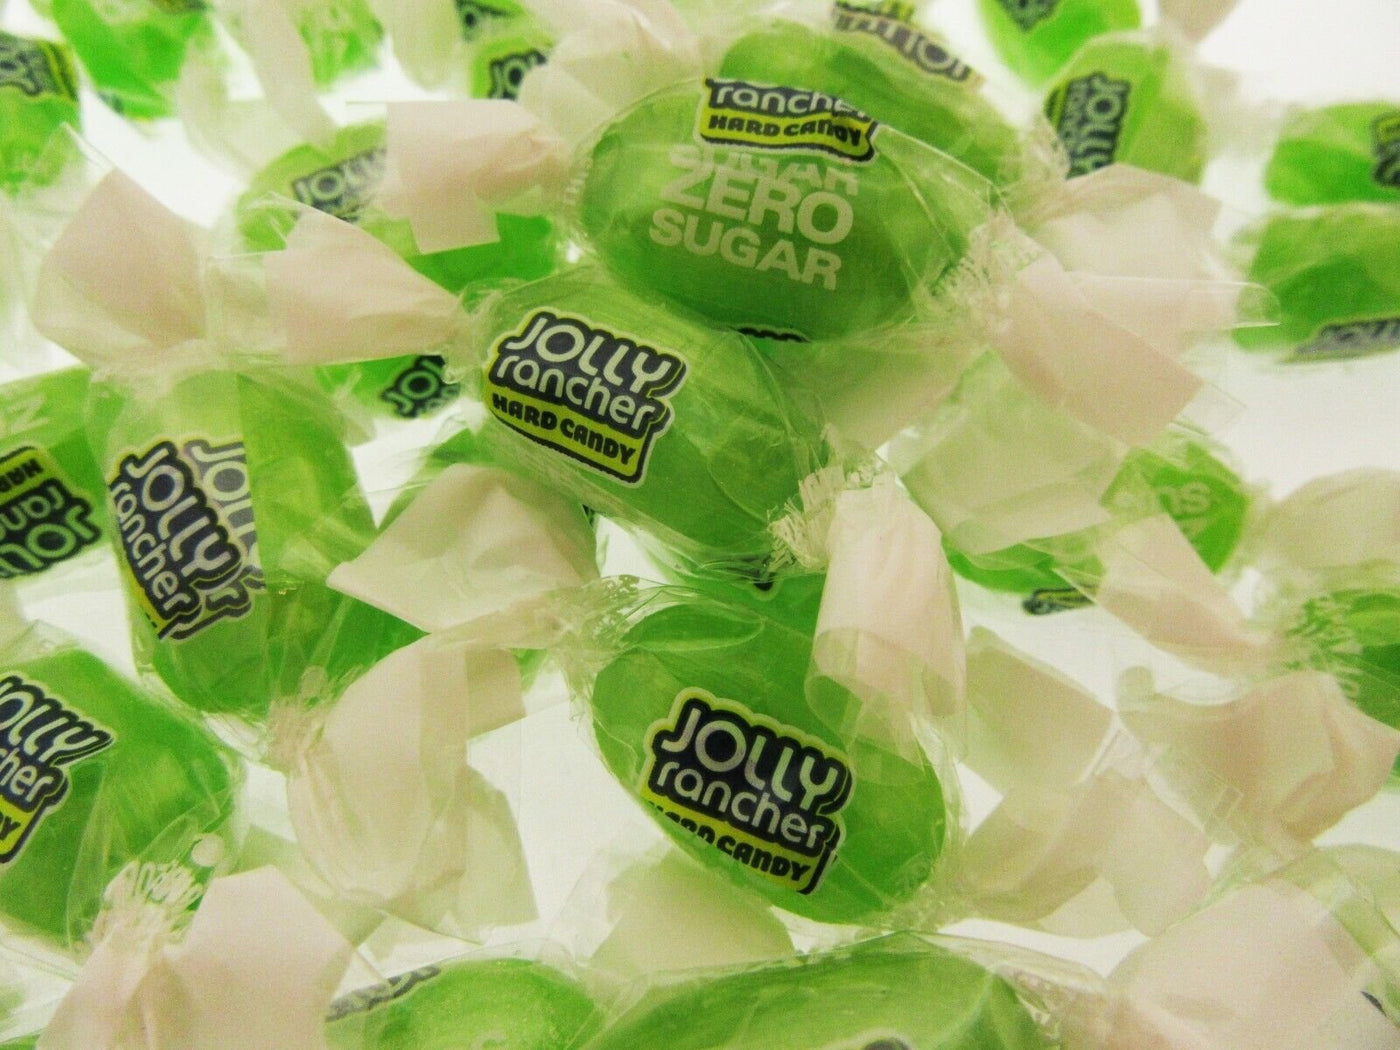 Jolly Rancher ZERO SUGAR FREE Green Apple 8oz Candy Candies Half Pound